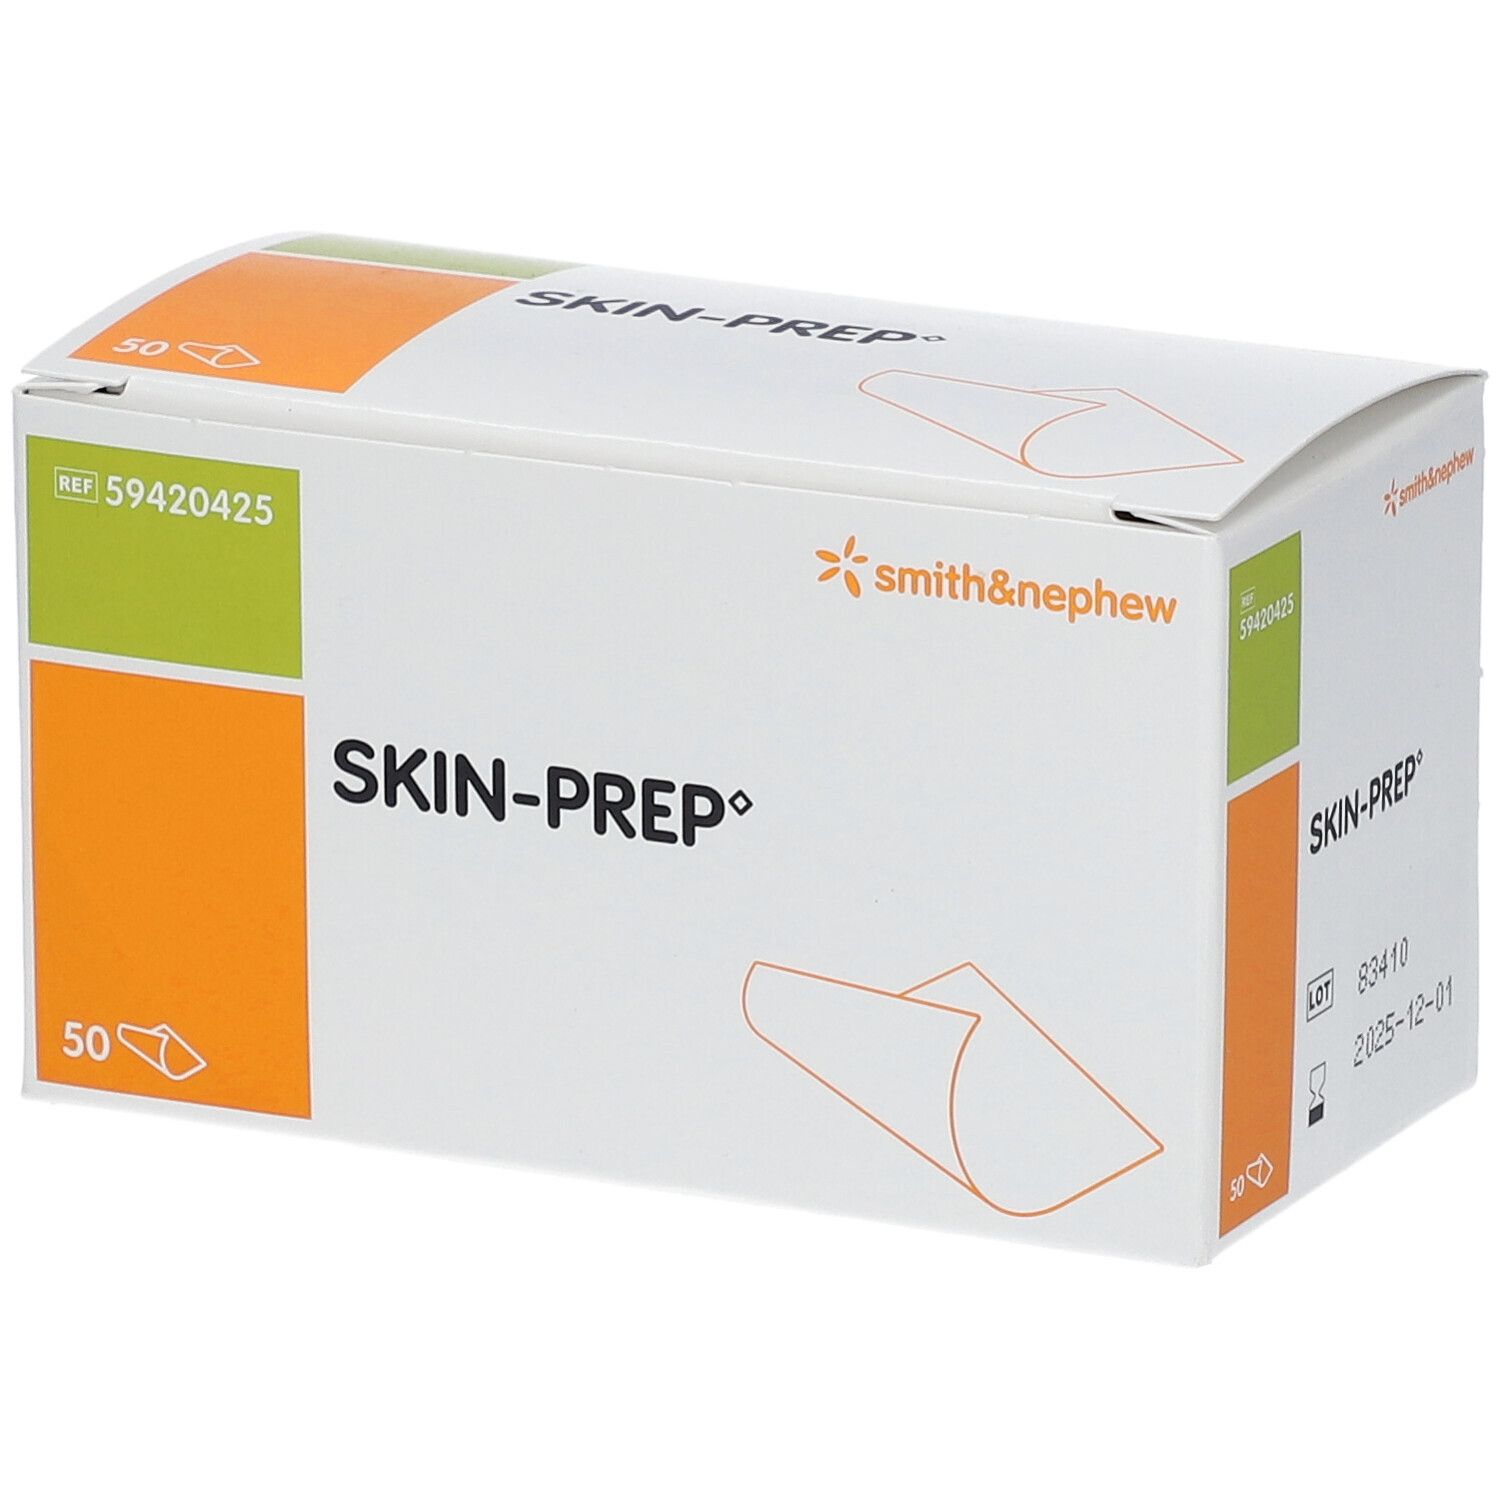 Smith & Nephew Skin-Prep®